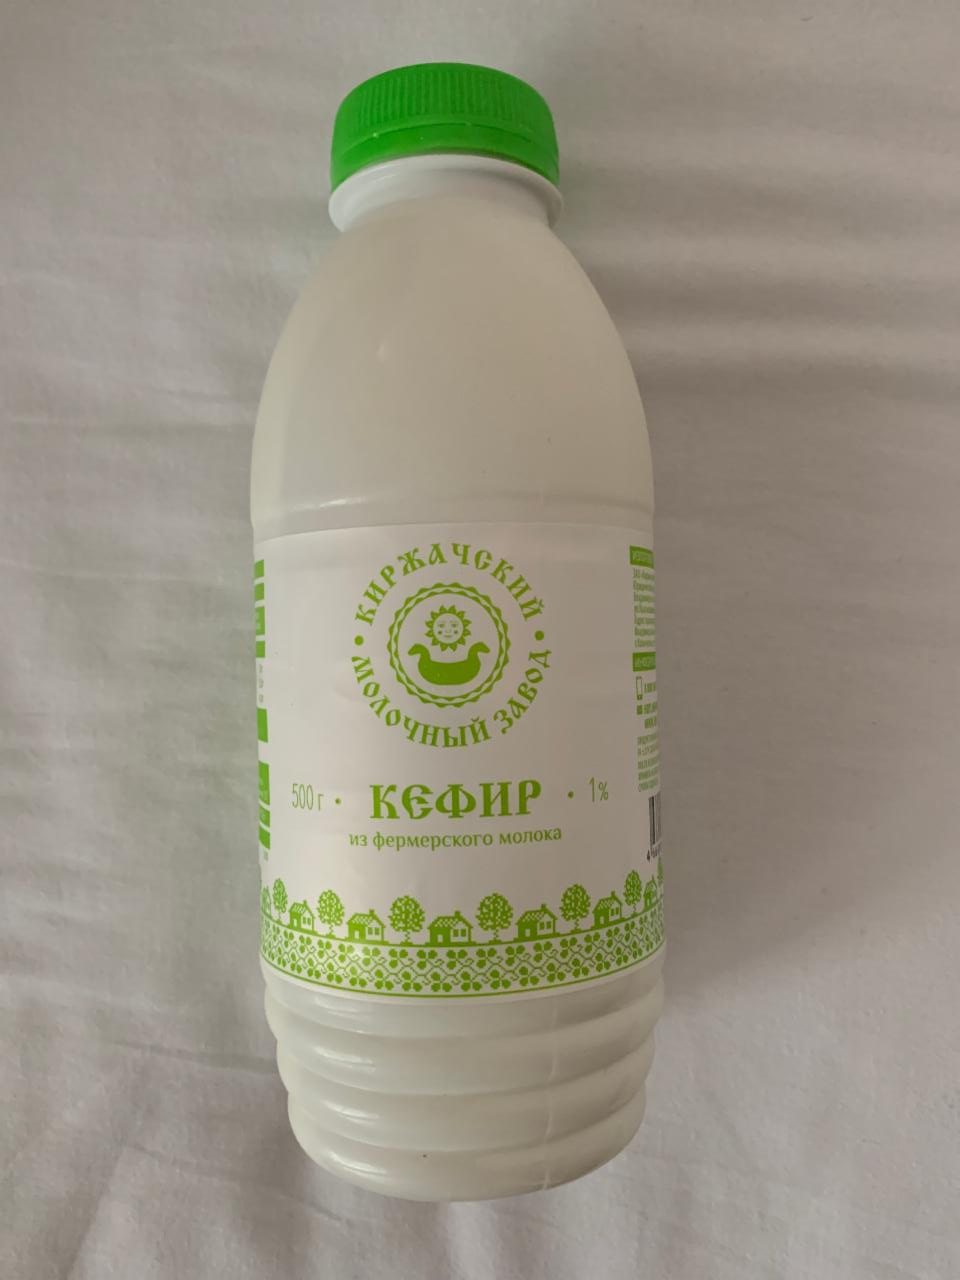 Фото - Кефир Киржачский молочный завод